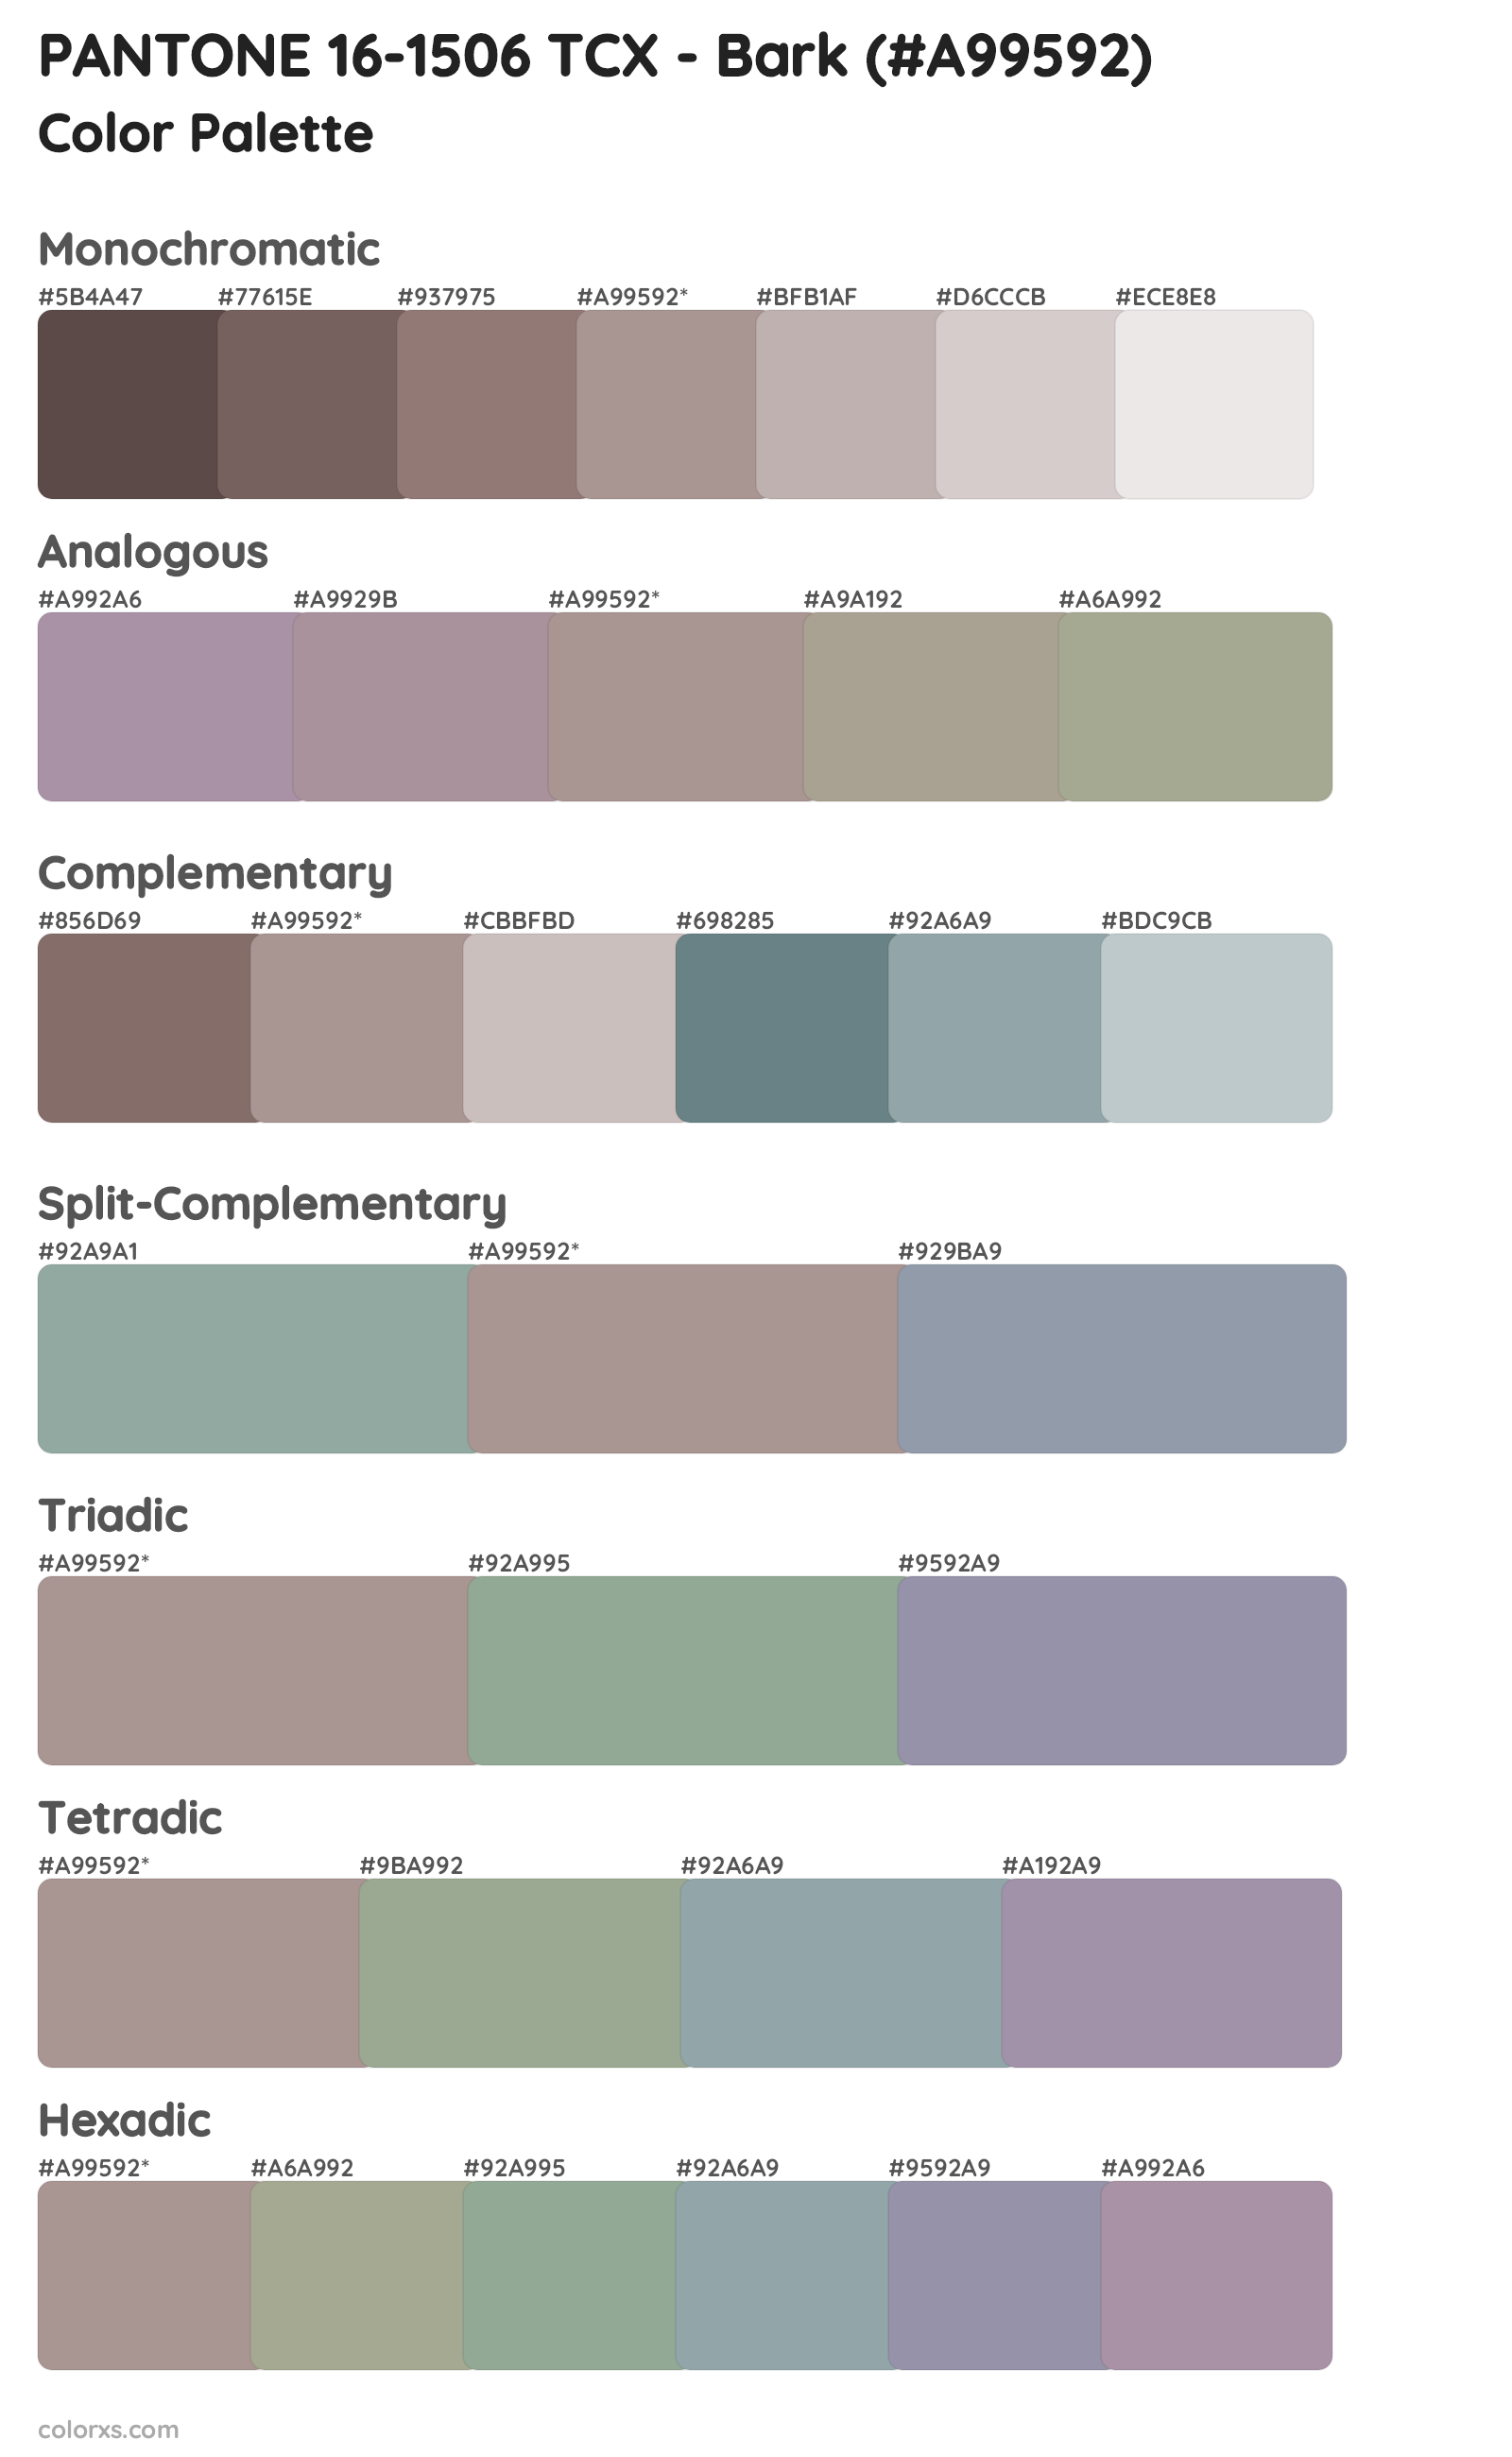 PANTONE 16-1506 TCX - Bark Color Scheme Palettes